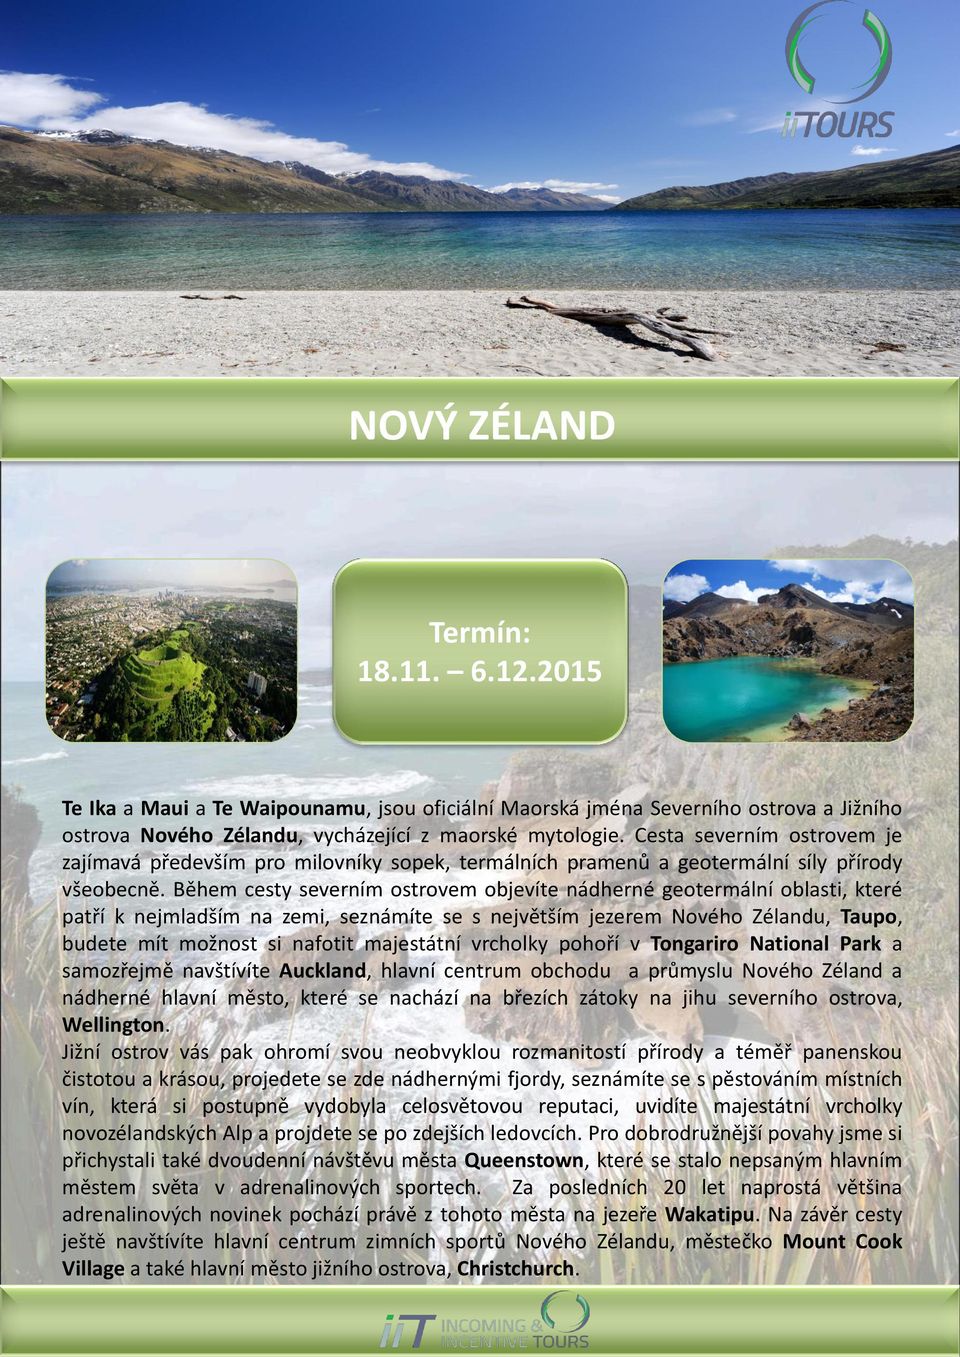 Během cesty severním ostrovem objevíte nádherné geotermální oblasti, které patří k nejmladším na zemi, seznámíte se s největším jezerem Nového Zélandu, Taupo, budete mít možnost si nafotit majestátní